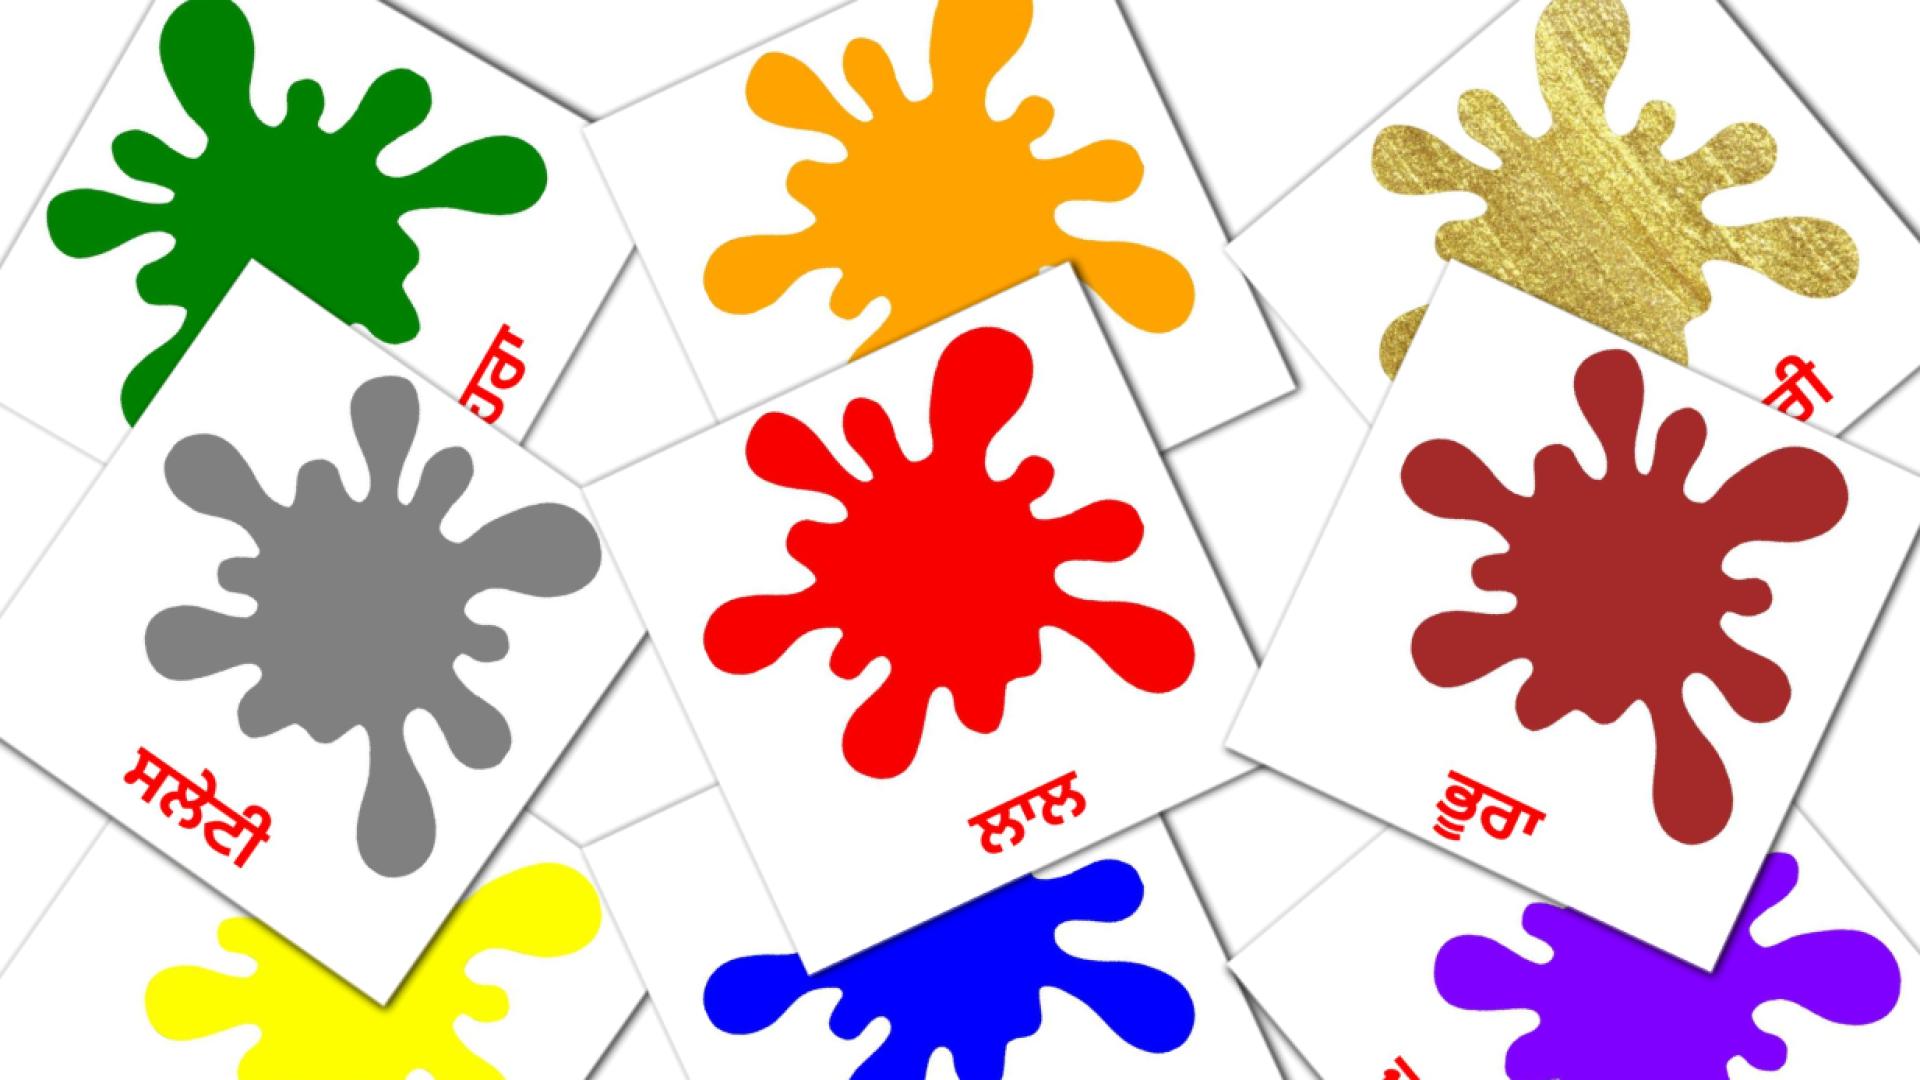 ਰੰਗ ਅਤੇ ਆਕਾਰ punjabi(Gurmukhi) vocabulary flashcards